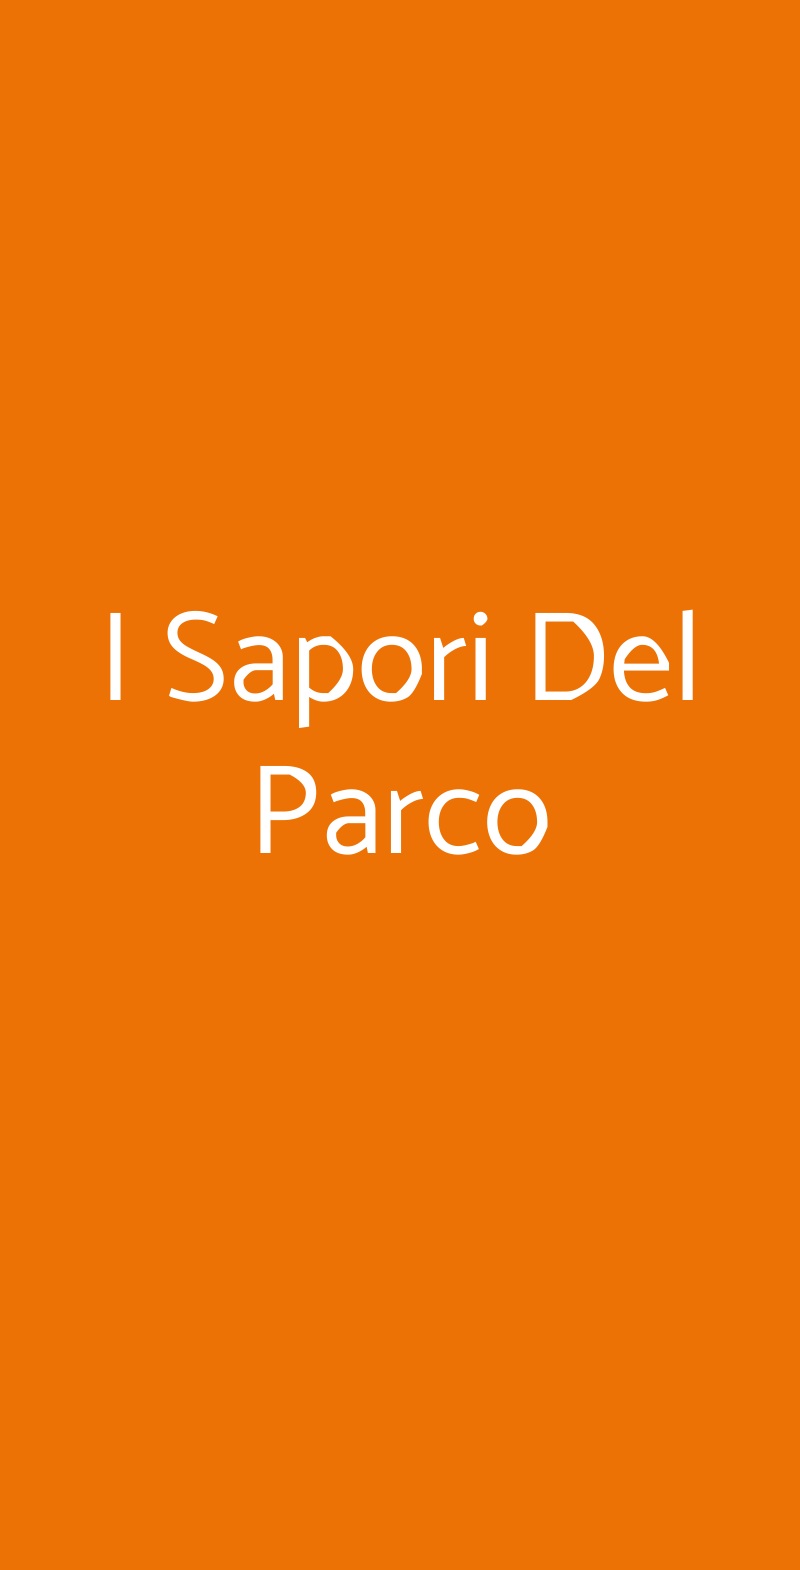 I Sapori Del Parco Roma menù 1 pagina